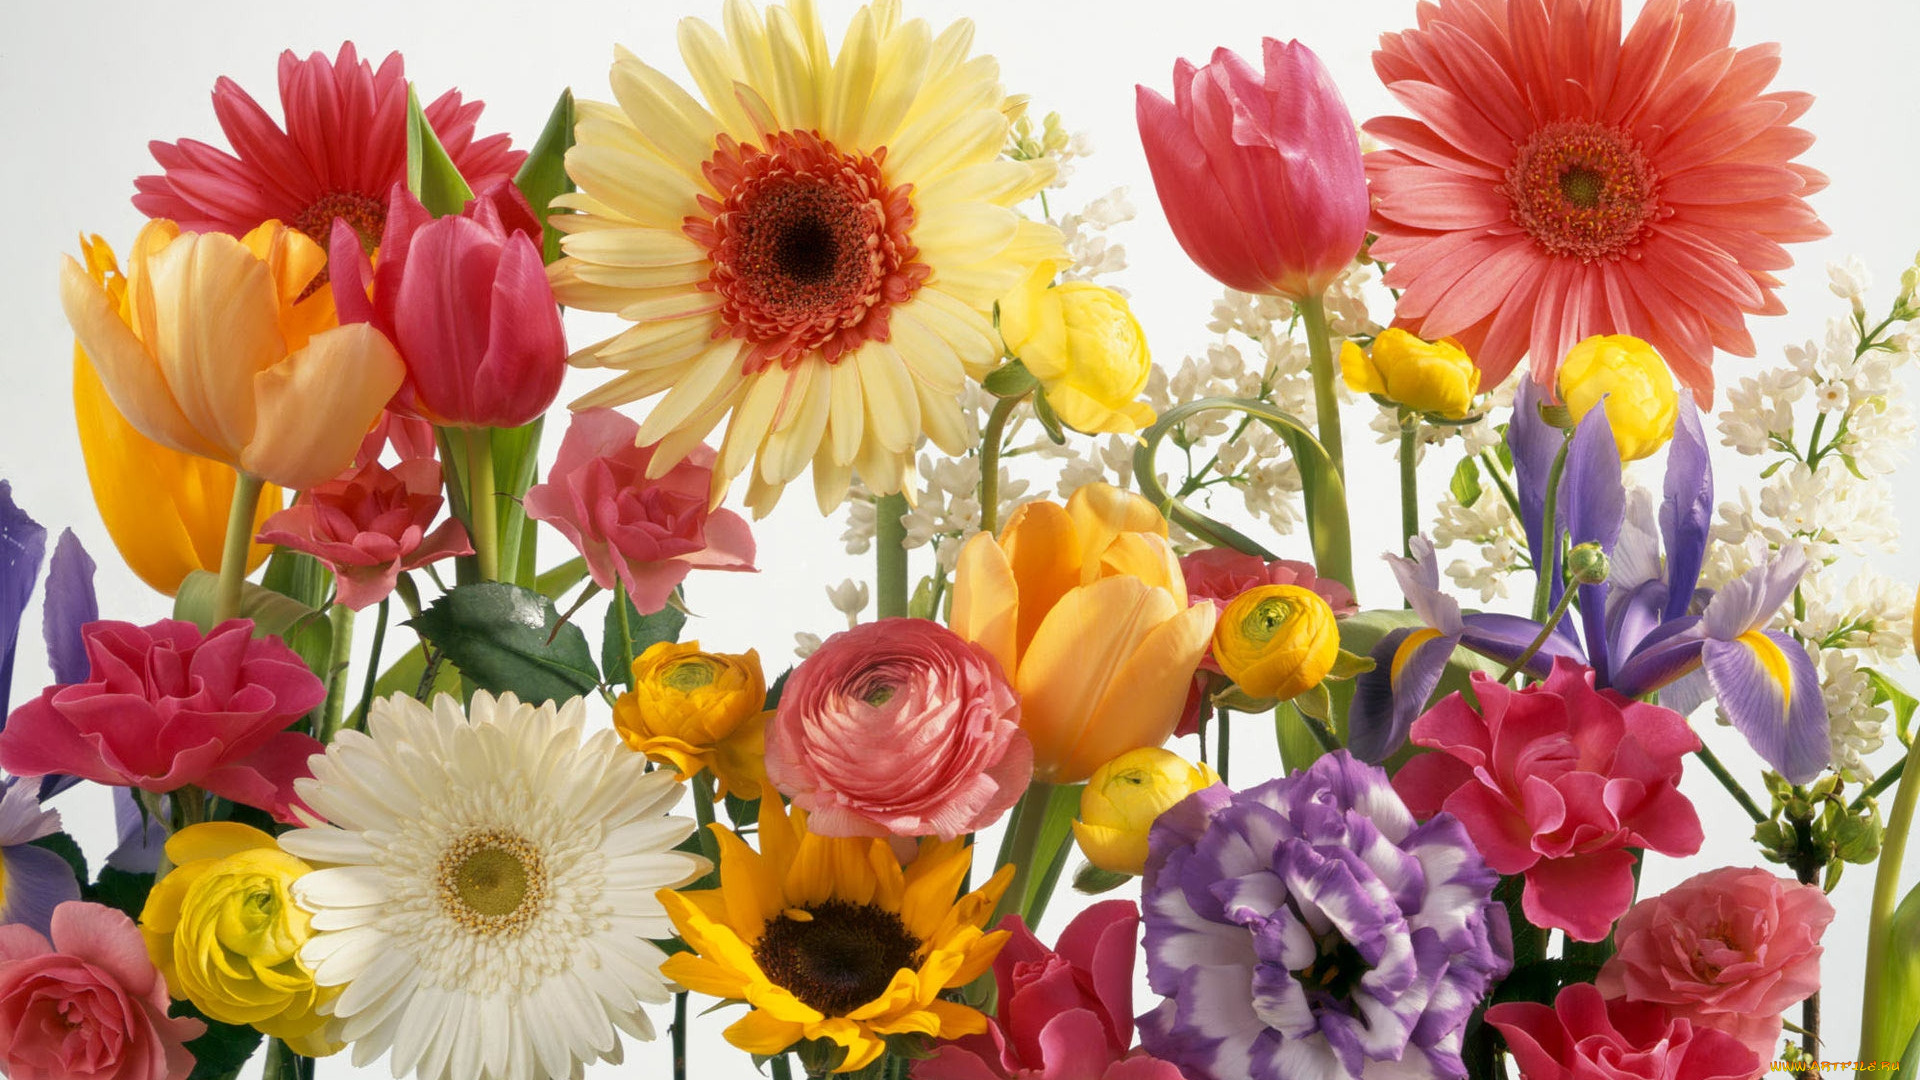 цветы, разные, вместе, тюльпаны, эустома, ирис, герберы